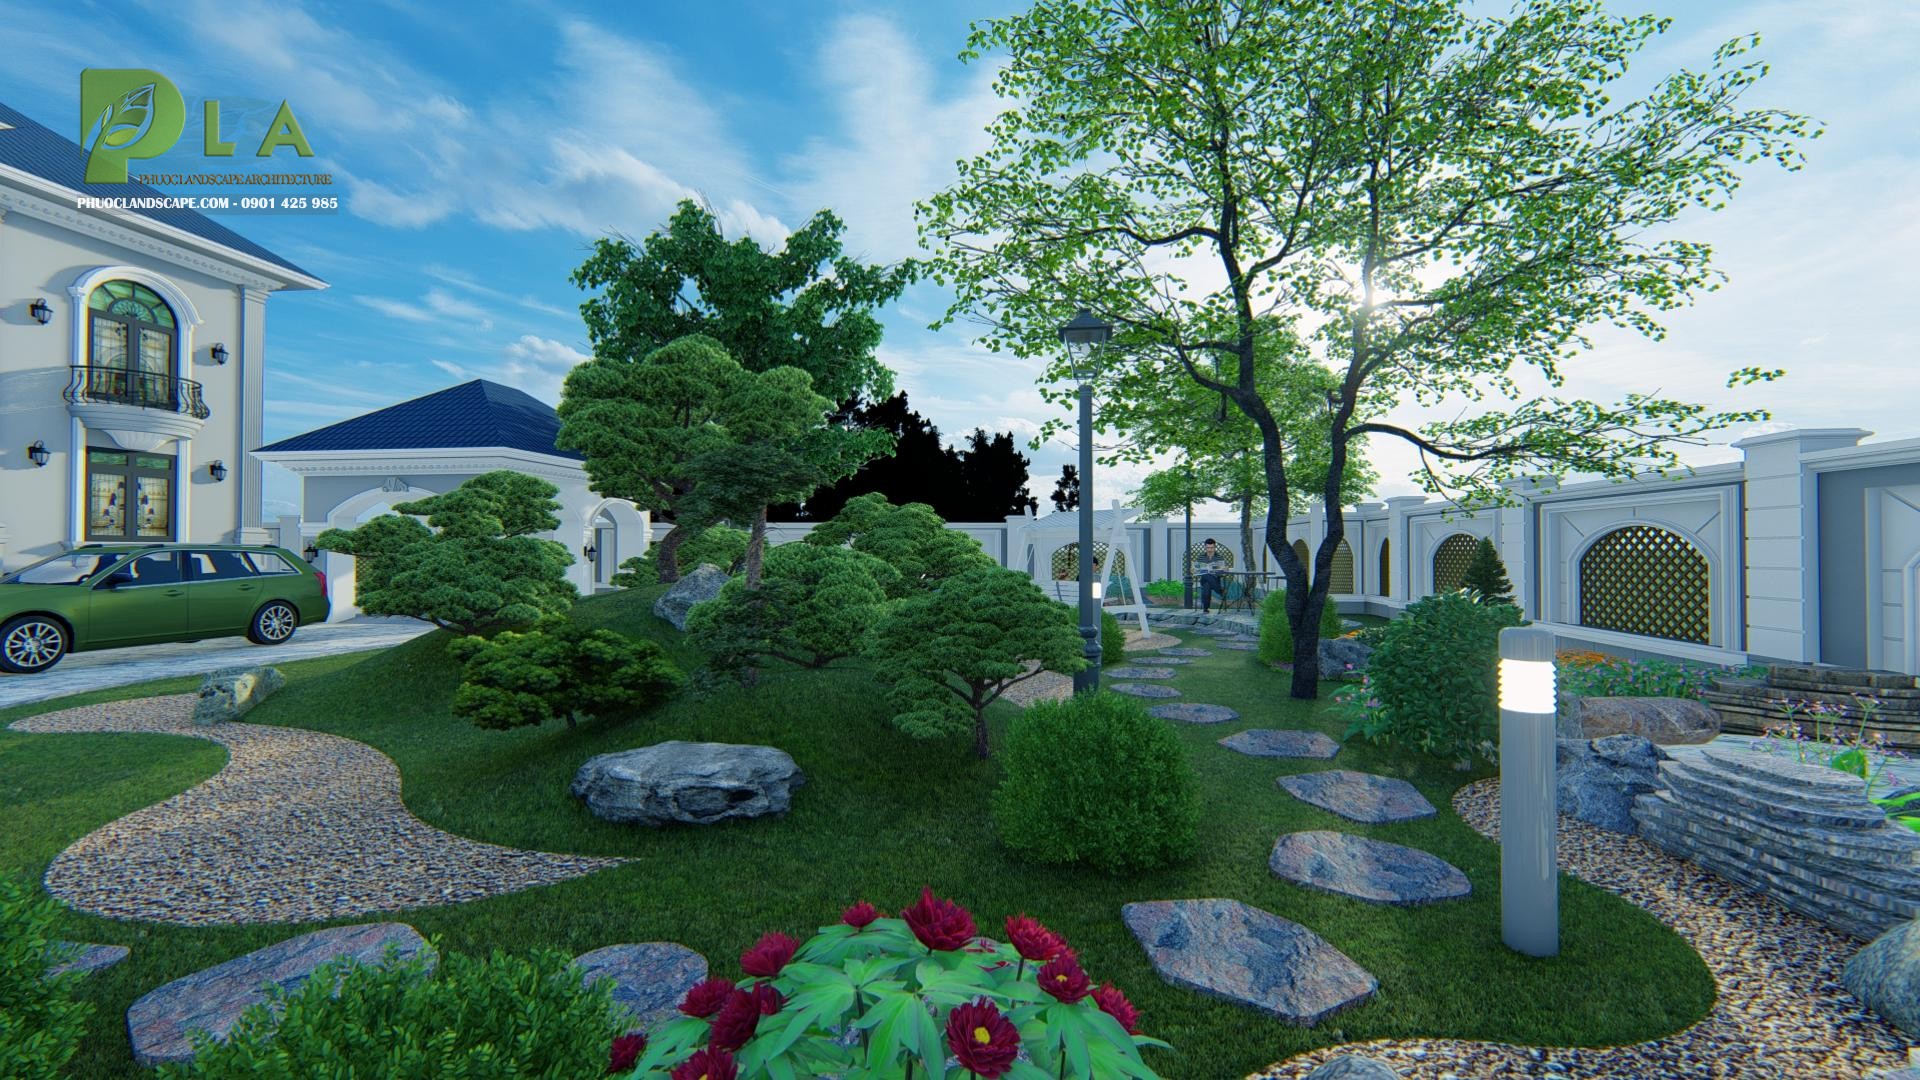 Thiết kế sân vườn đẹp bậc nhất giá rẻ tại Hà Nội